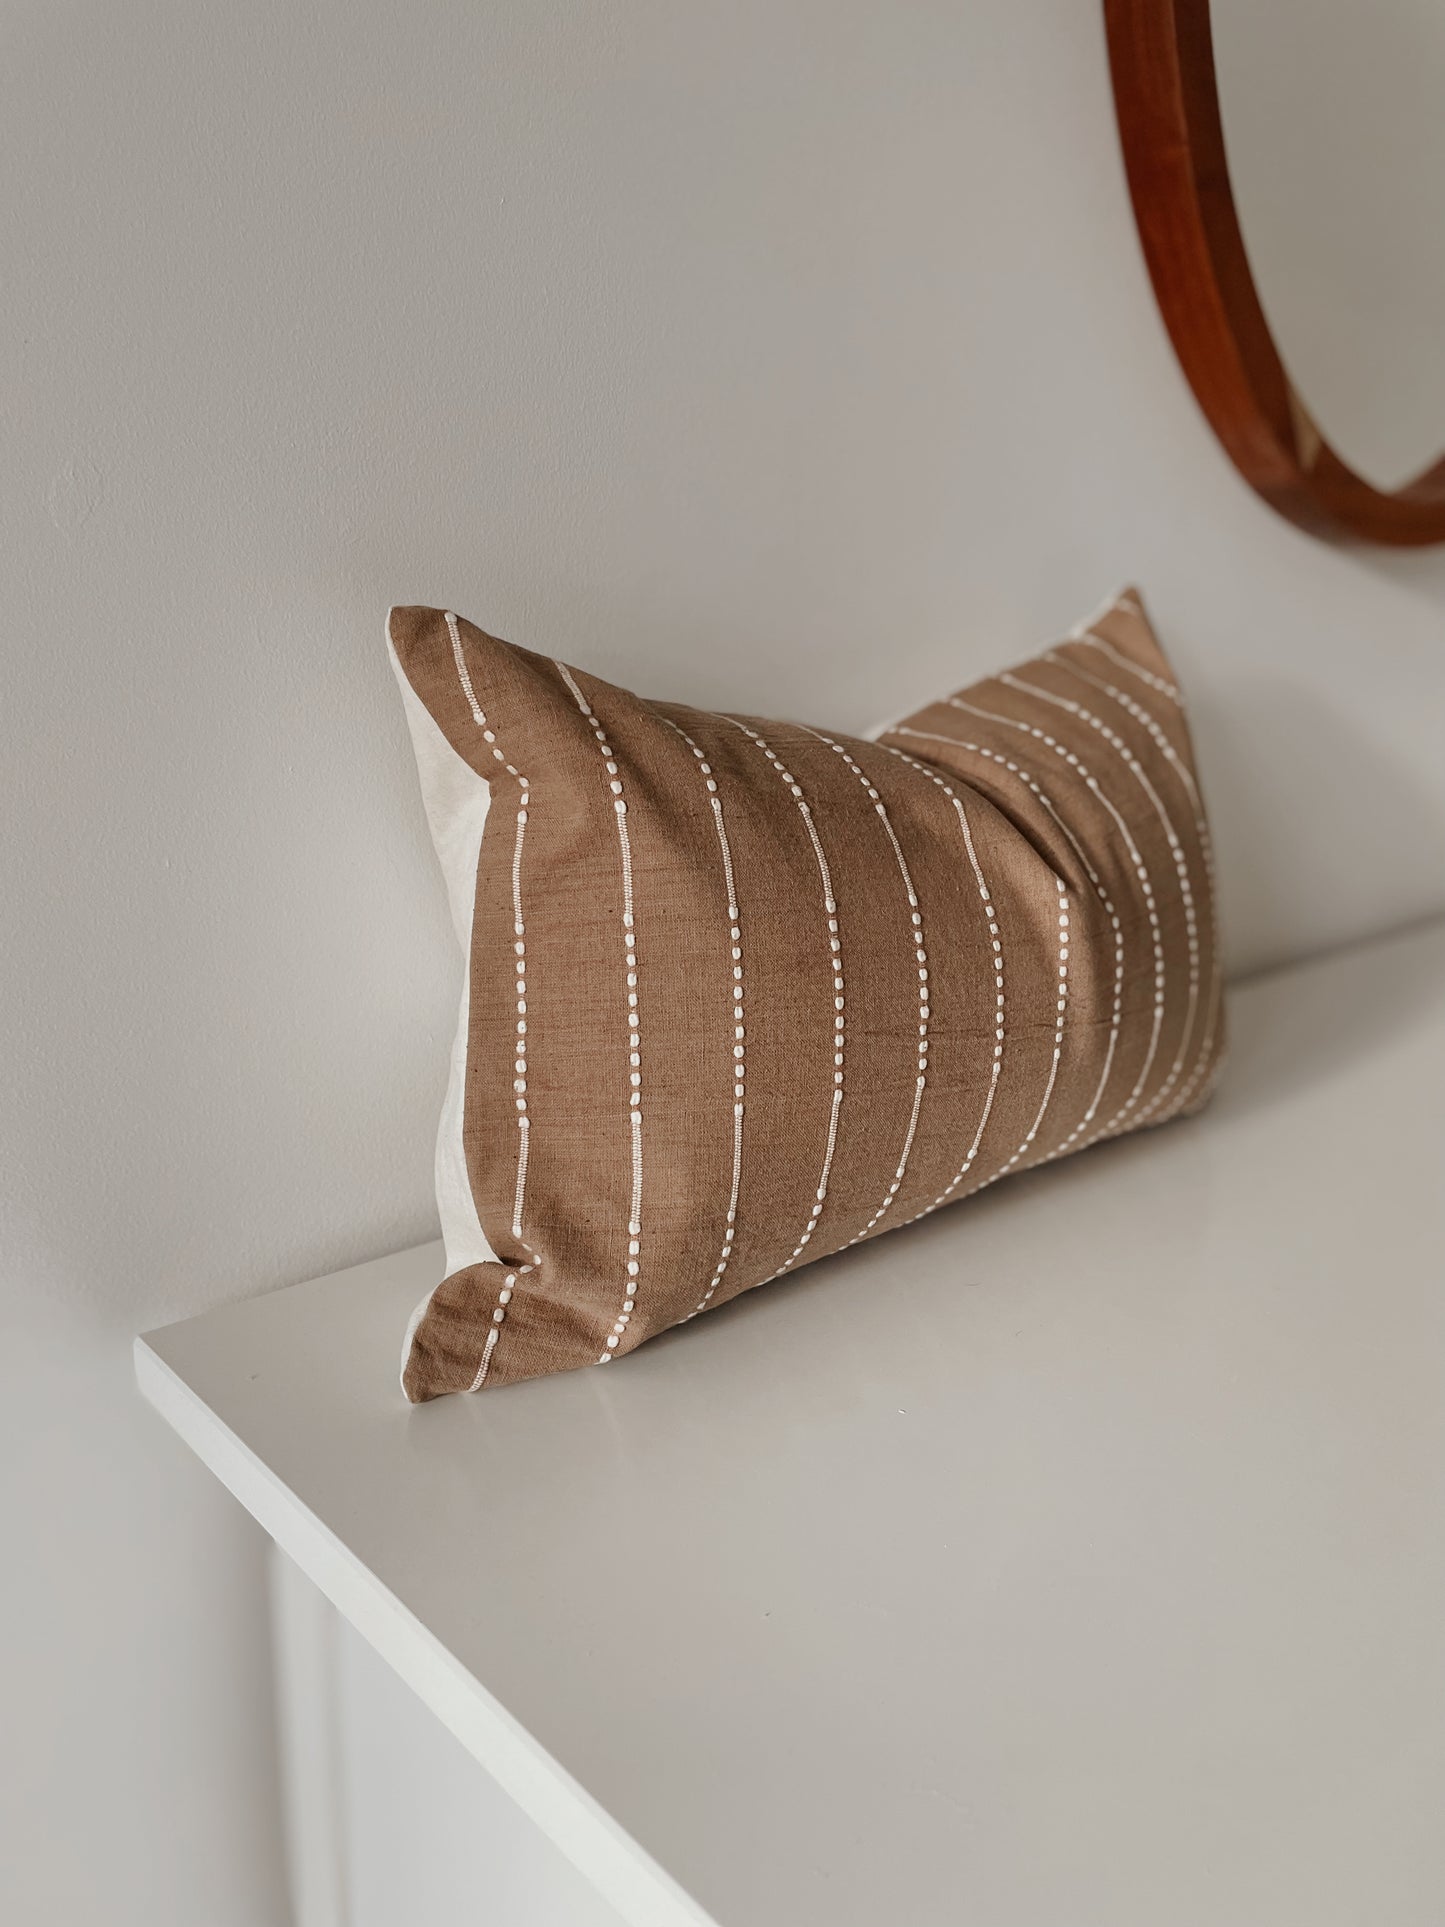 Cocoa Woven Pillow Cover